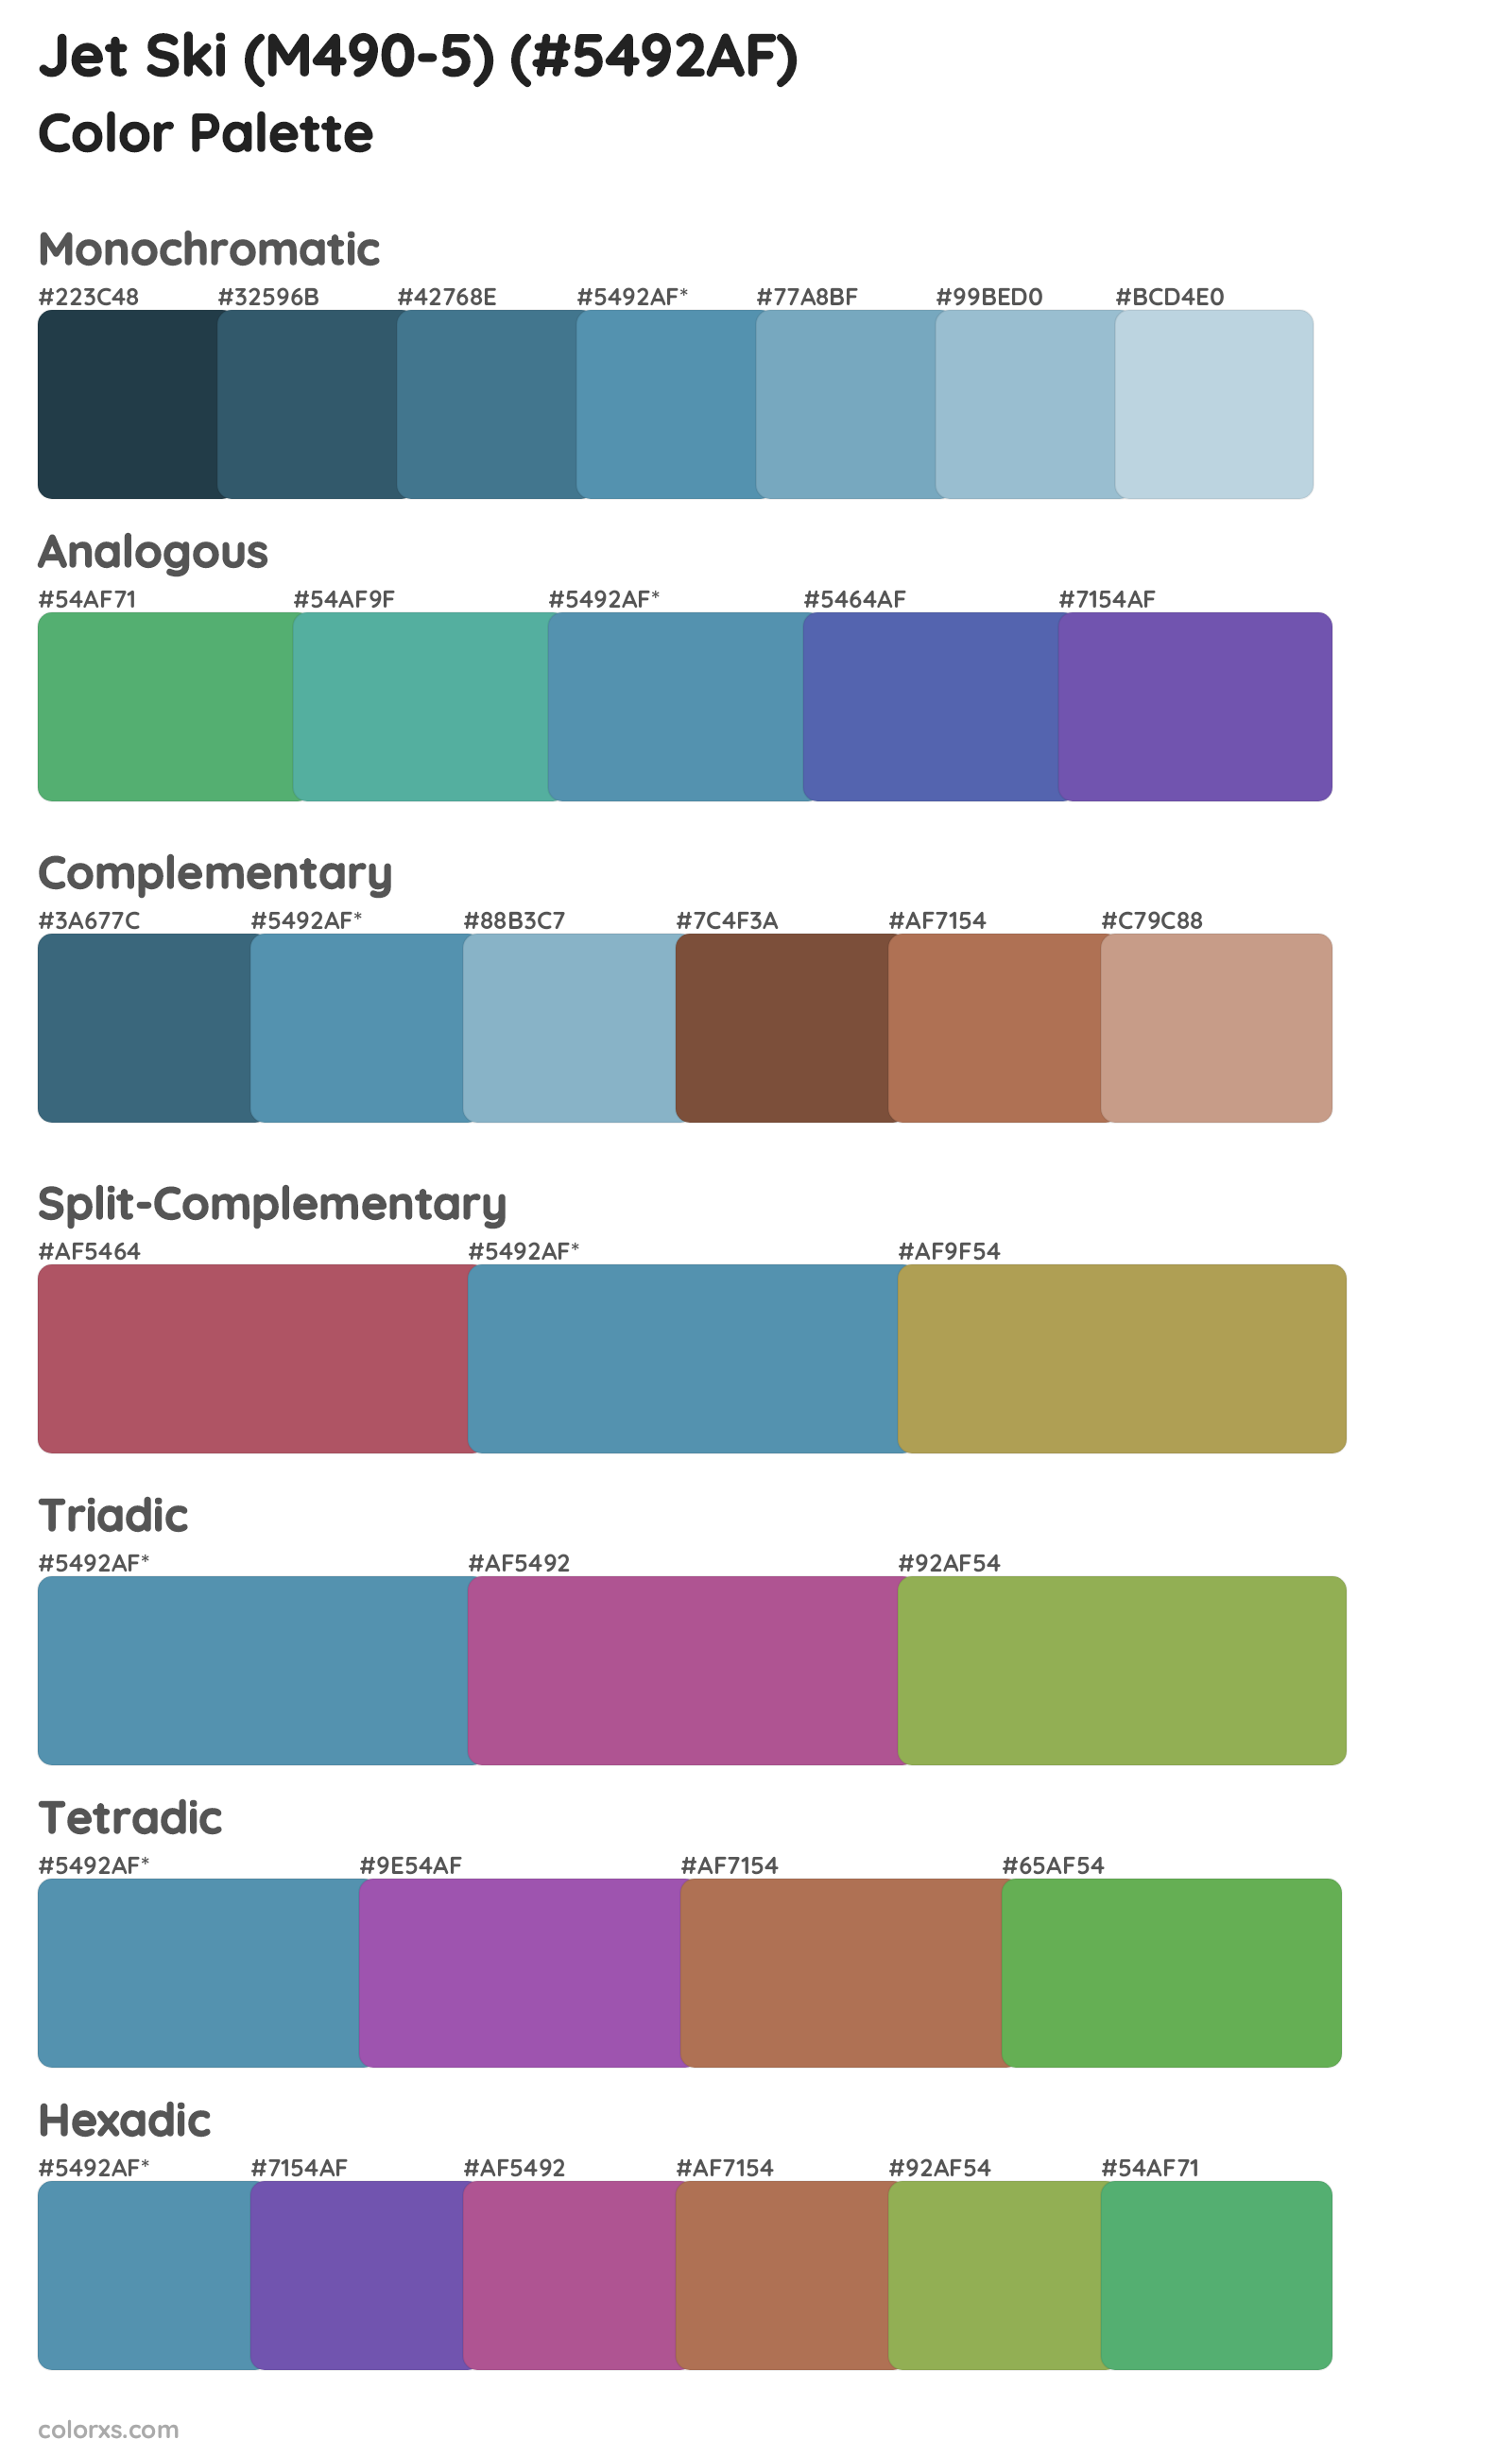 Jet Ski (M490-5) Color Scheme Palettes